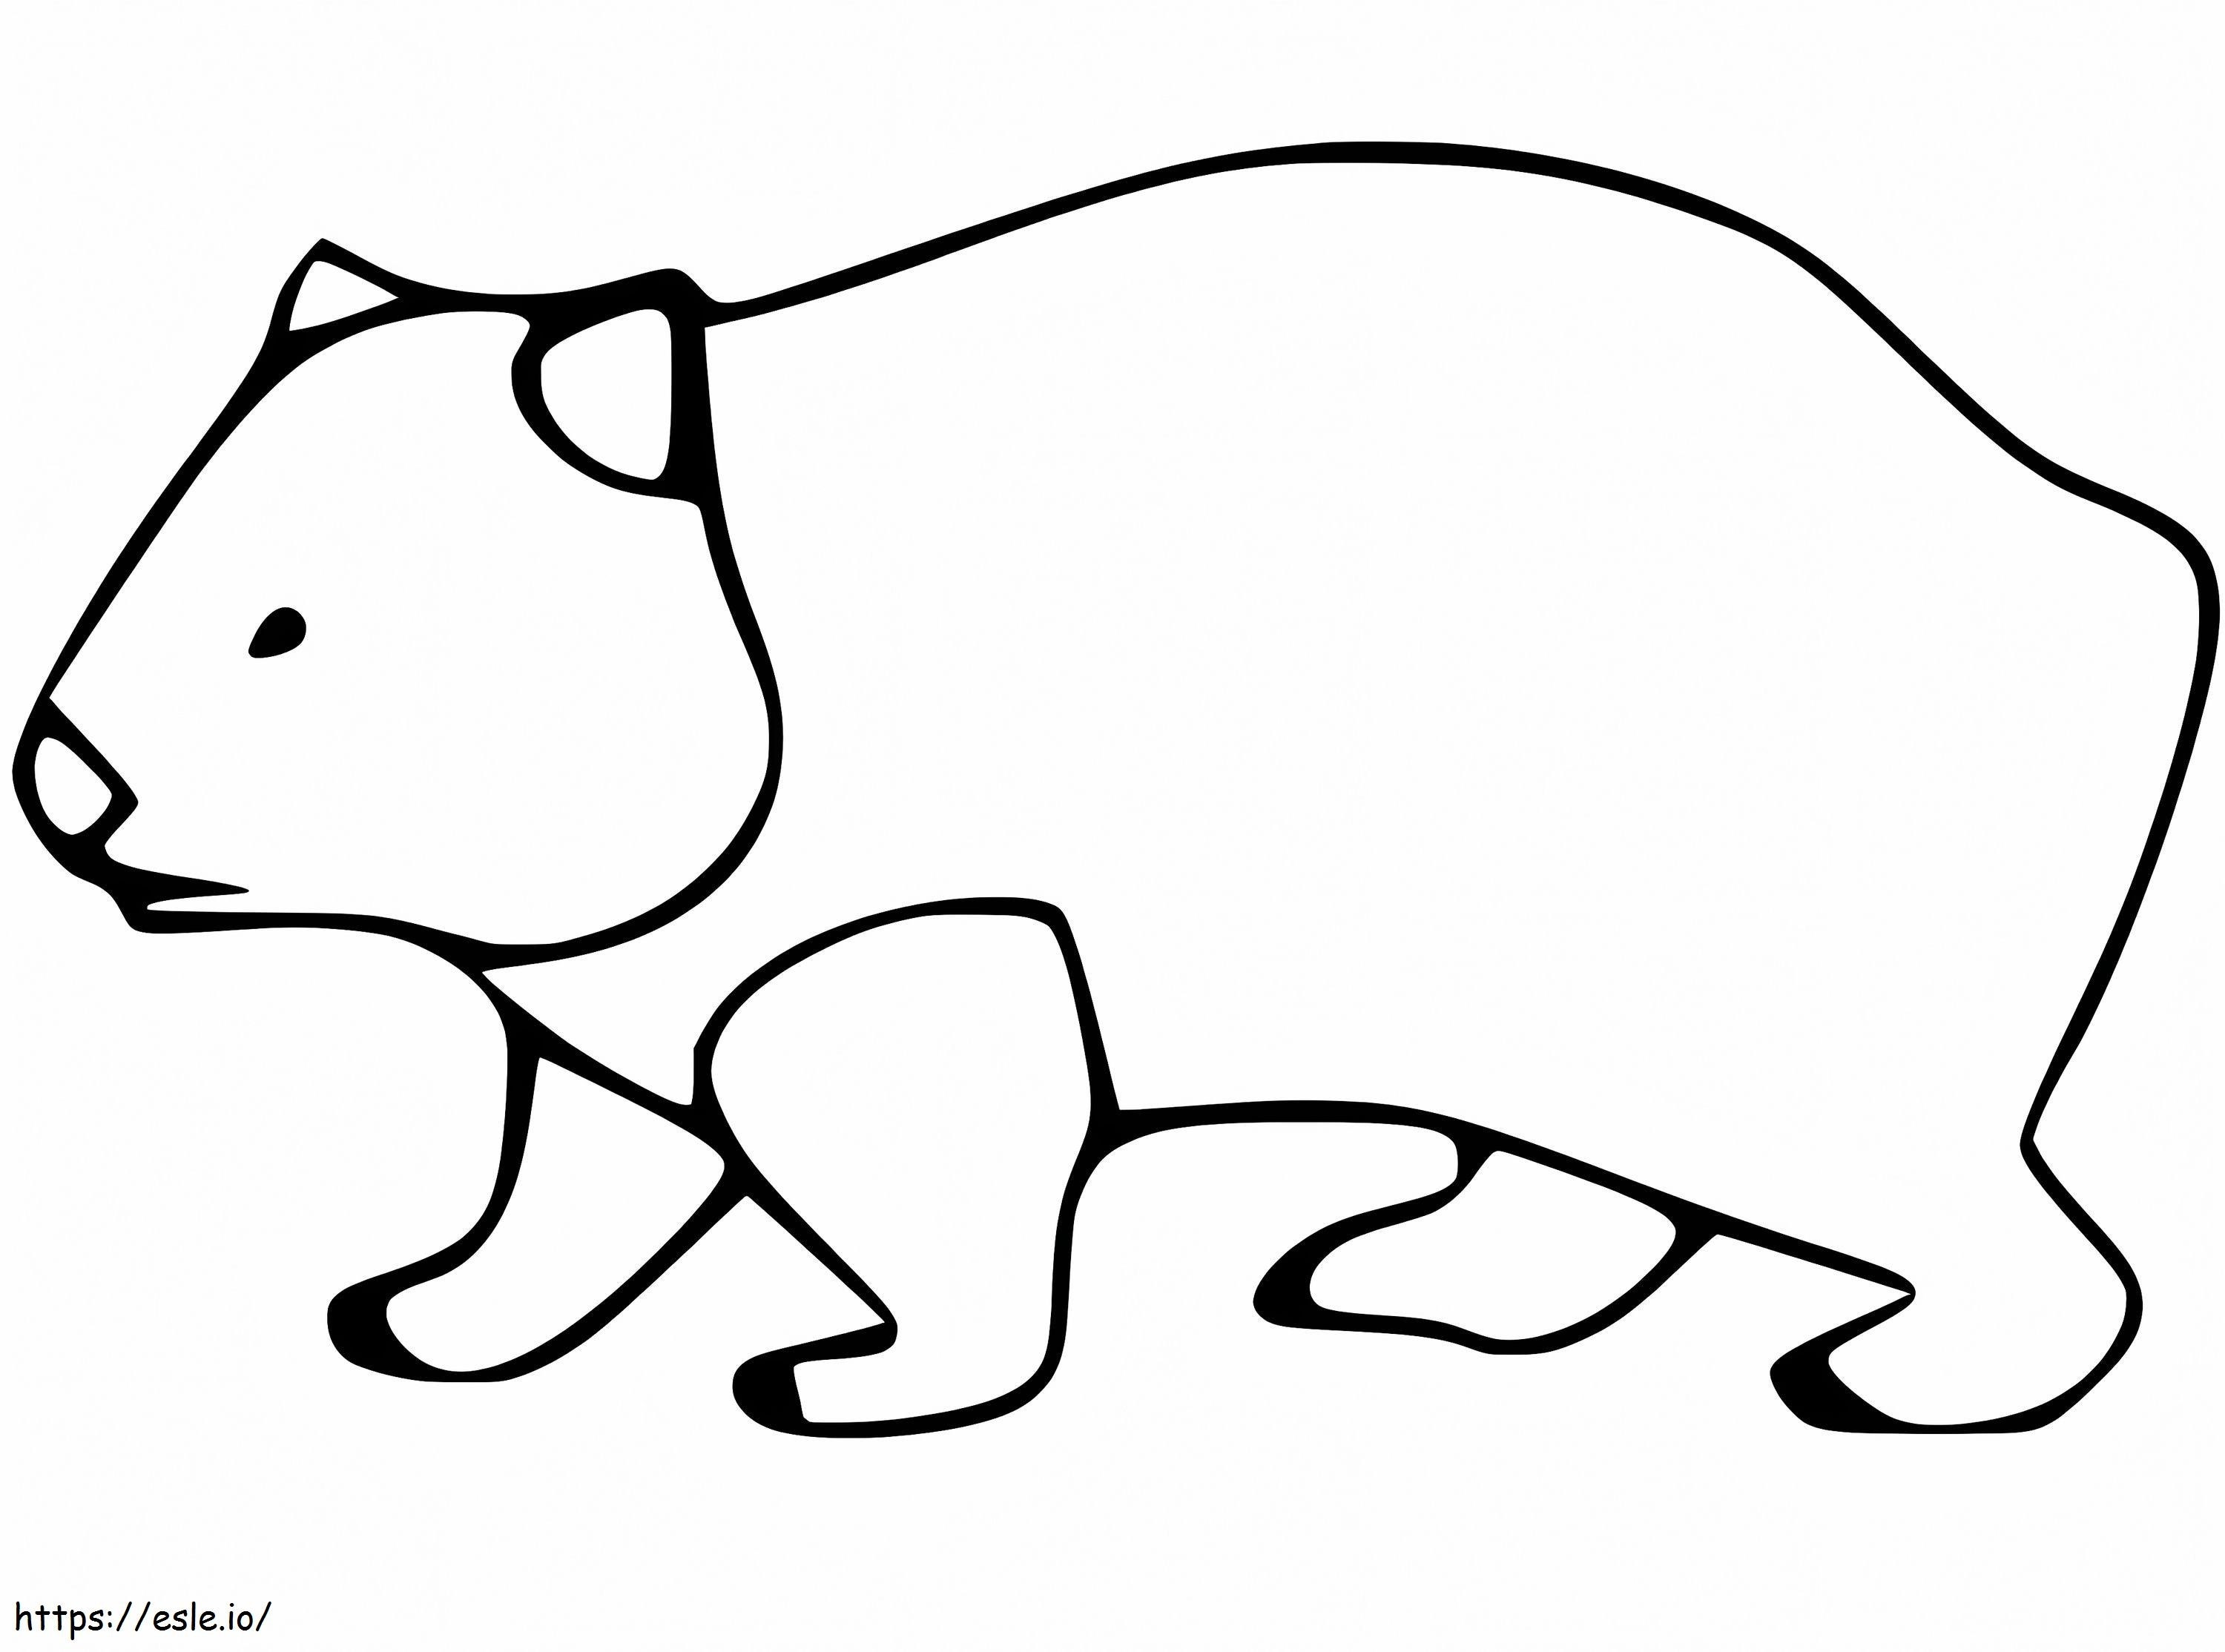 Coloriage Wombat imprimable gratuitement à imprimer dessin